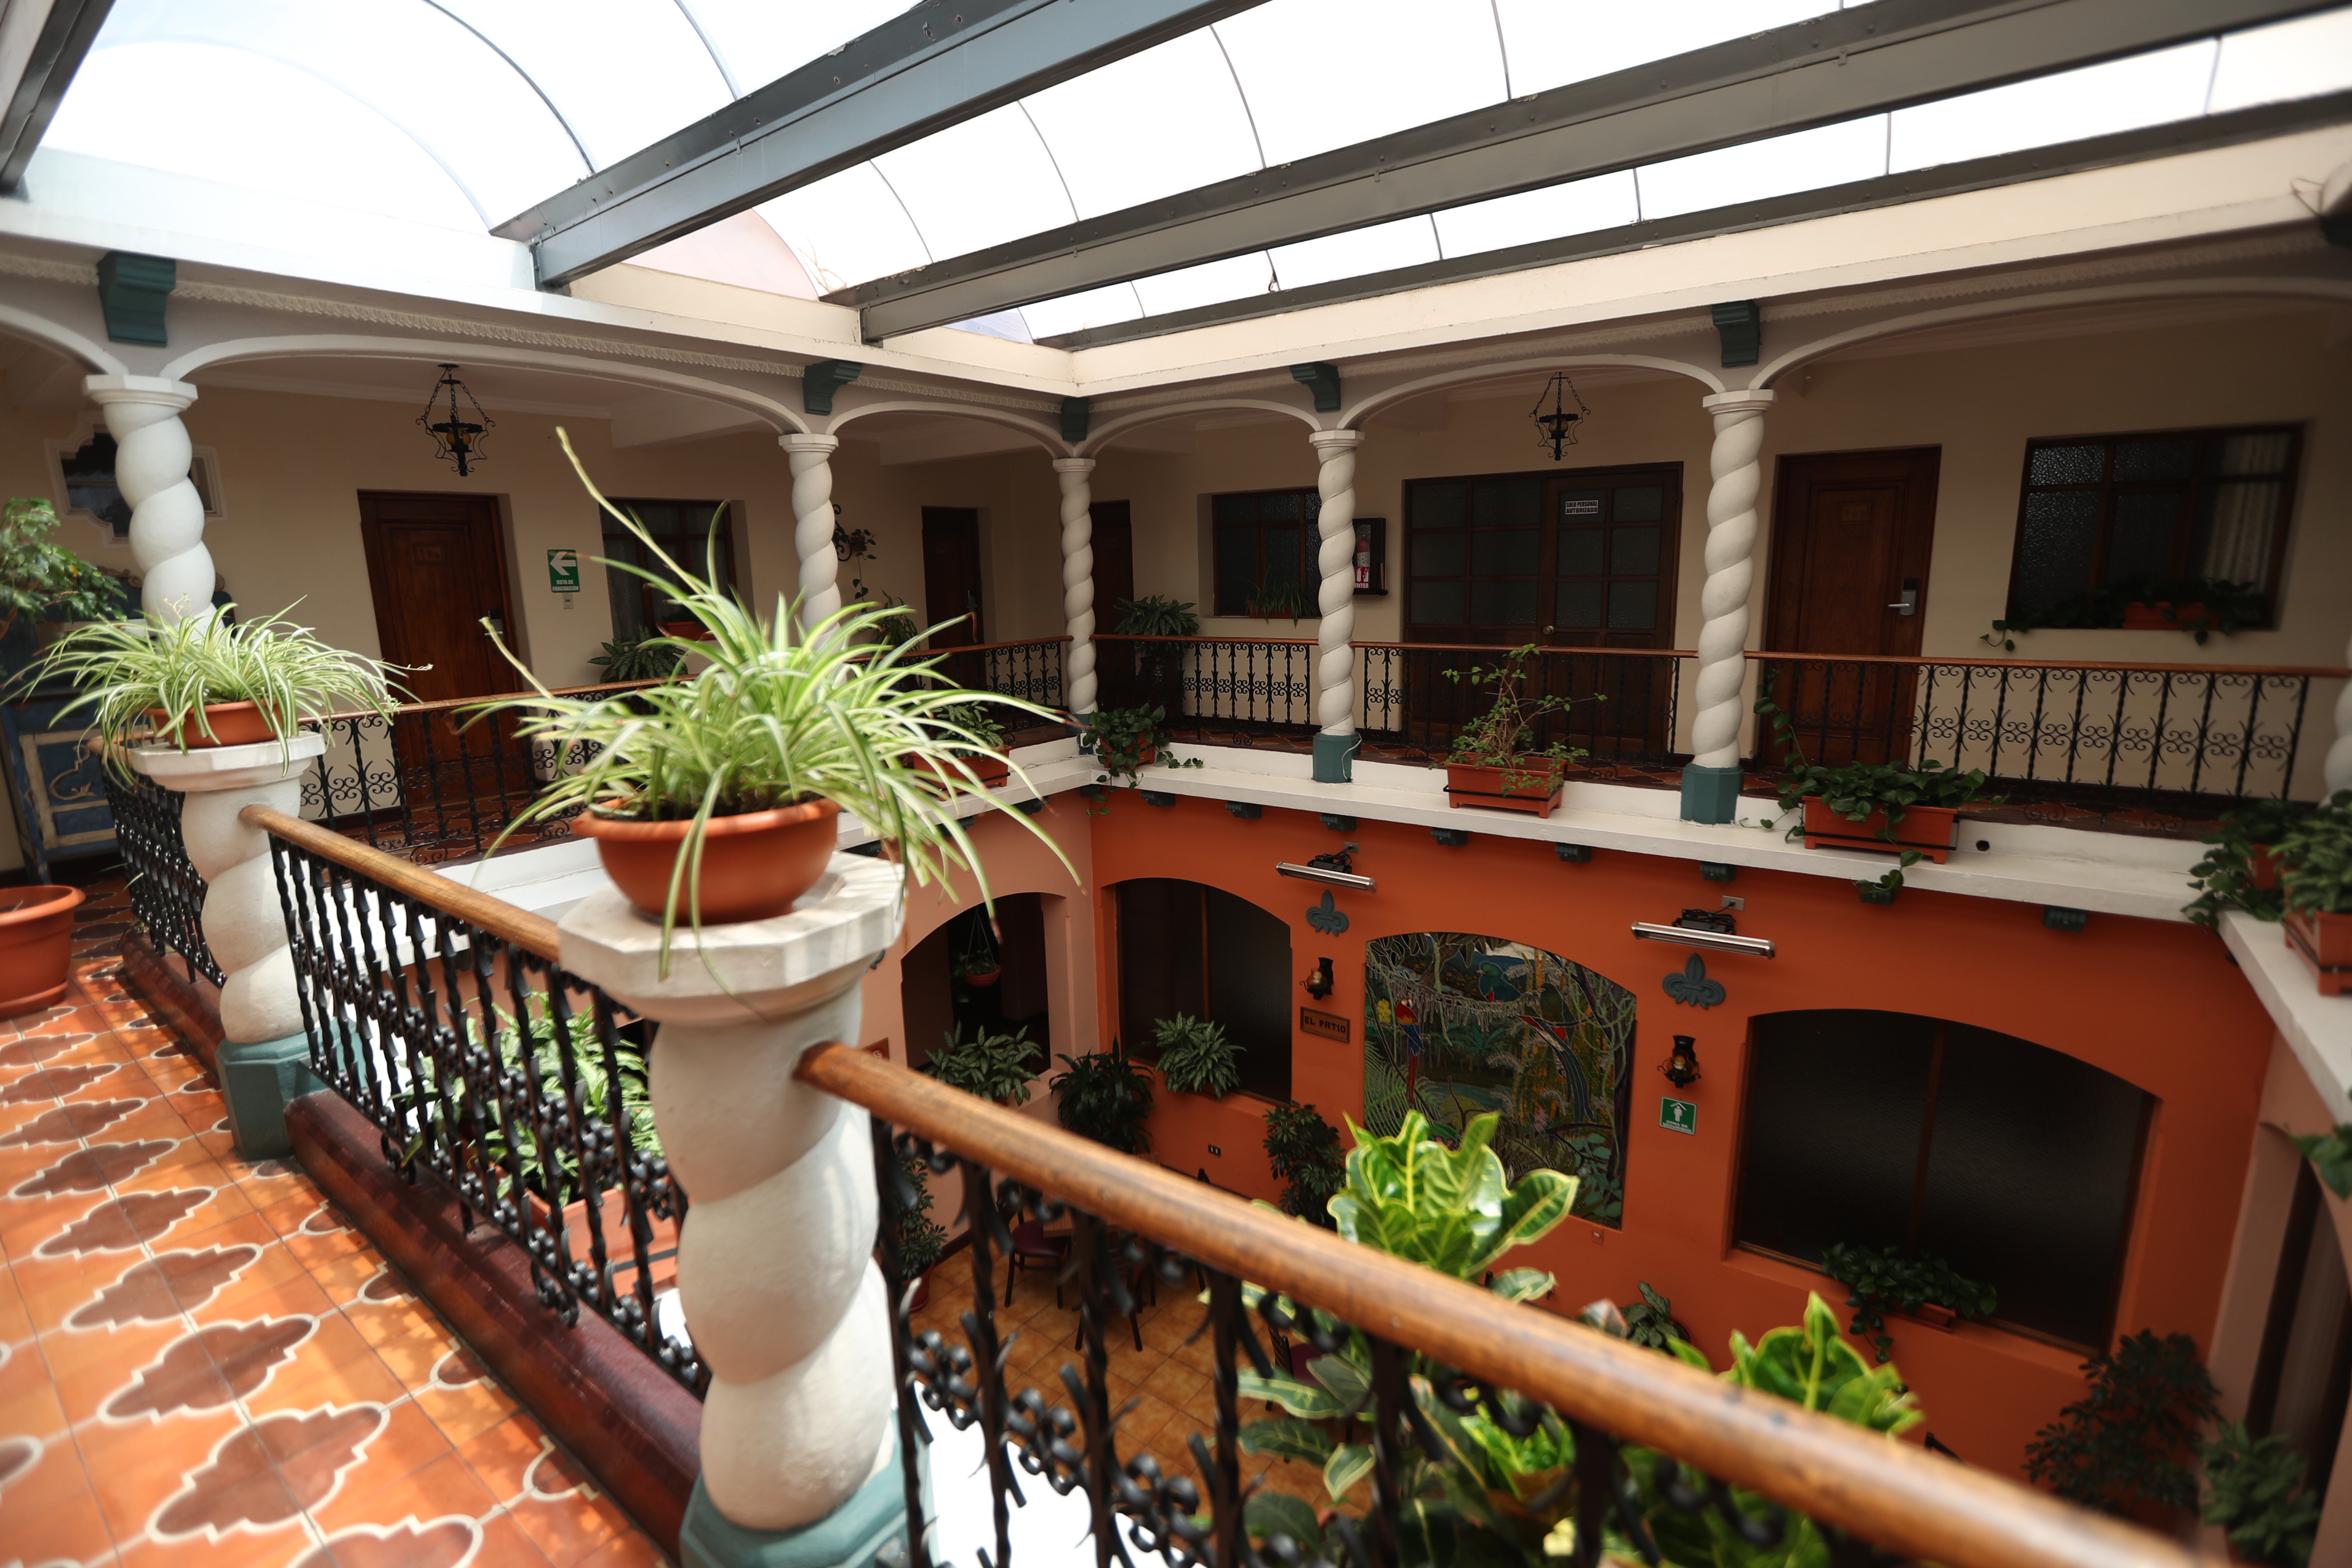 El Hotel Bonifaz tiene 85 años de funcionar en Quetzaltenango y ahora pretende superar la crisis económica por el coronavirus. (Foto Prensa Libre: María Longo) 